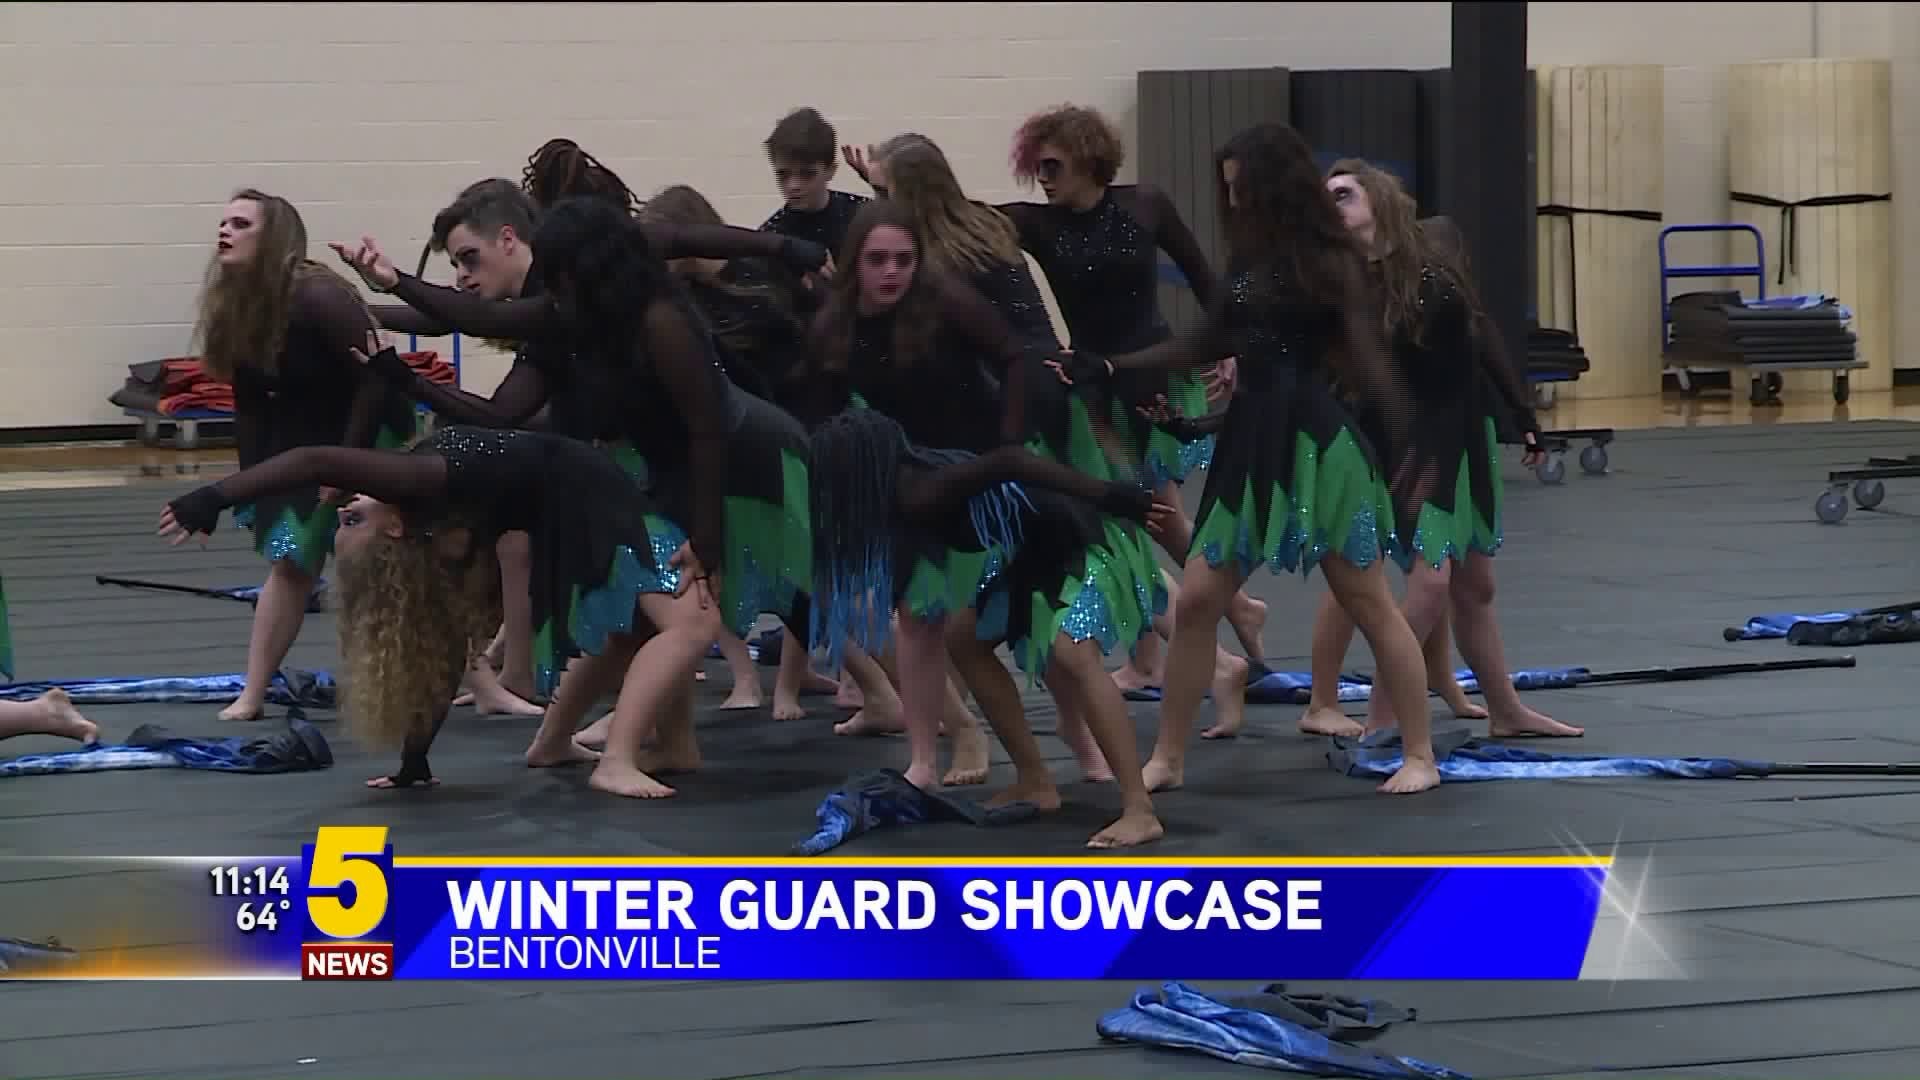 Winter Guard Showcase